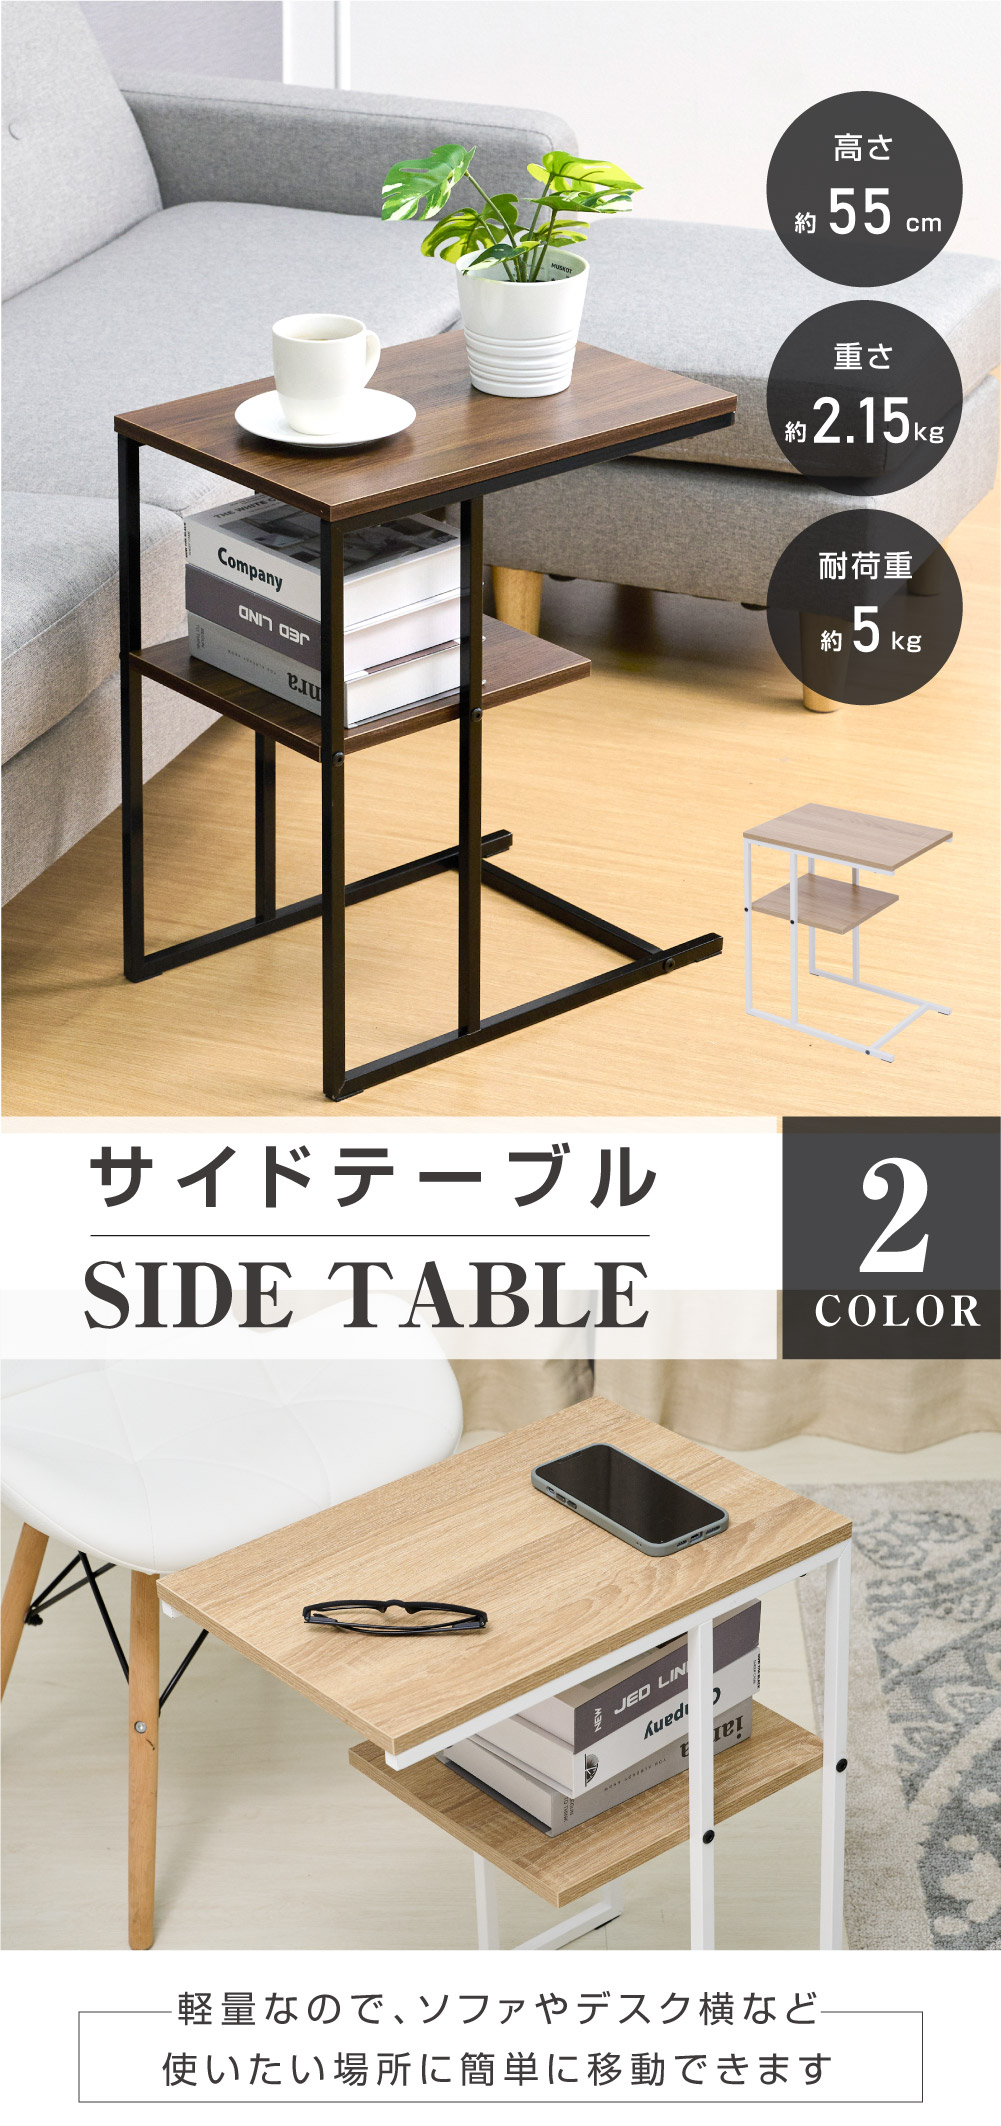 日本製 テーブル サイドテーブル コの字型 木目調 ミニテーブル コーヒーテーブル カフェテーブル 幅45.5×奥行30×高さ55cm 簡単組立  多機能 家具 tks-sdtb45 :tks-sdtb45:サインキングダム - 通販 - Yahoo!ショッピング